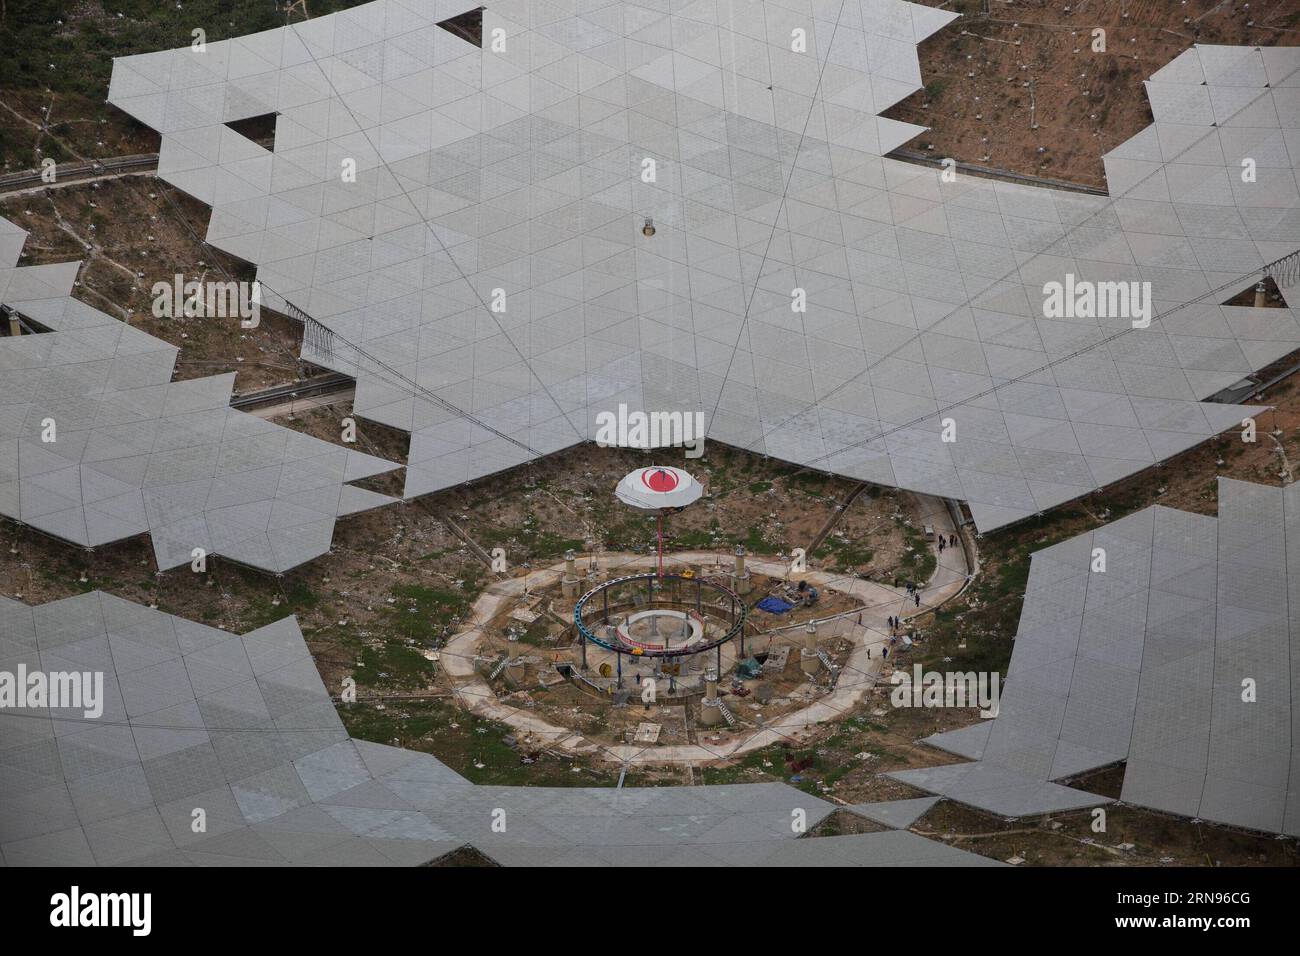 Bau des weltgrößten Radioteleskops in Cina (151121) -- PINGTANG, 21 novembre 2015 -- il sistema di supporto della cabina di alimentazione del telescopio sferico a apertura singola VELOCE della Cina è in fase di test a Qiannan, nella provincia di Guizhou, 21 novembre 2015. Quando sarà completato nel 2016, il telescopio sferico con apertura di cinquecento metri (FAST) sarà il più grande del mondo, superando l'Osservatorio di Arecibo di Porto Rico, che ha un diametro di 300 metri. (zhs) CHINA-GUIZHOU-FAST-TELESCOPE (CN) JinxLiwang PUBLICATIONxNOTxINxCHN Construction the World radio Telescope in China 151121 Ping Tang Nov 21 2015 T. Foto Stock